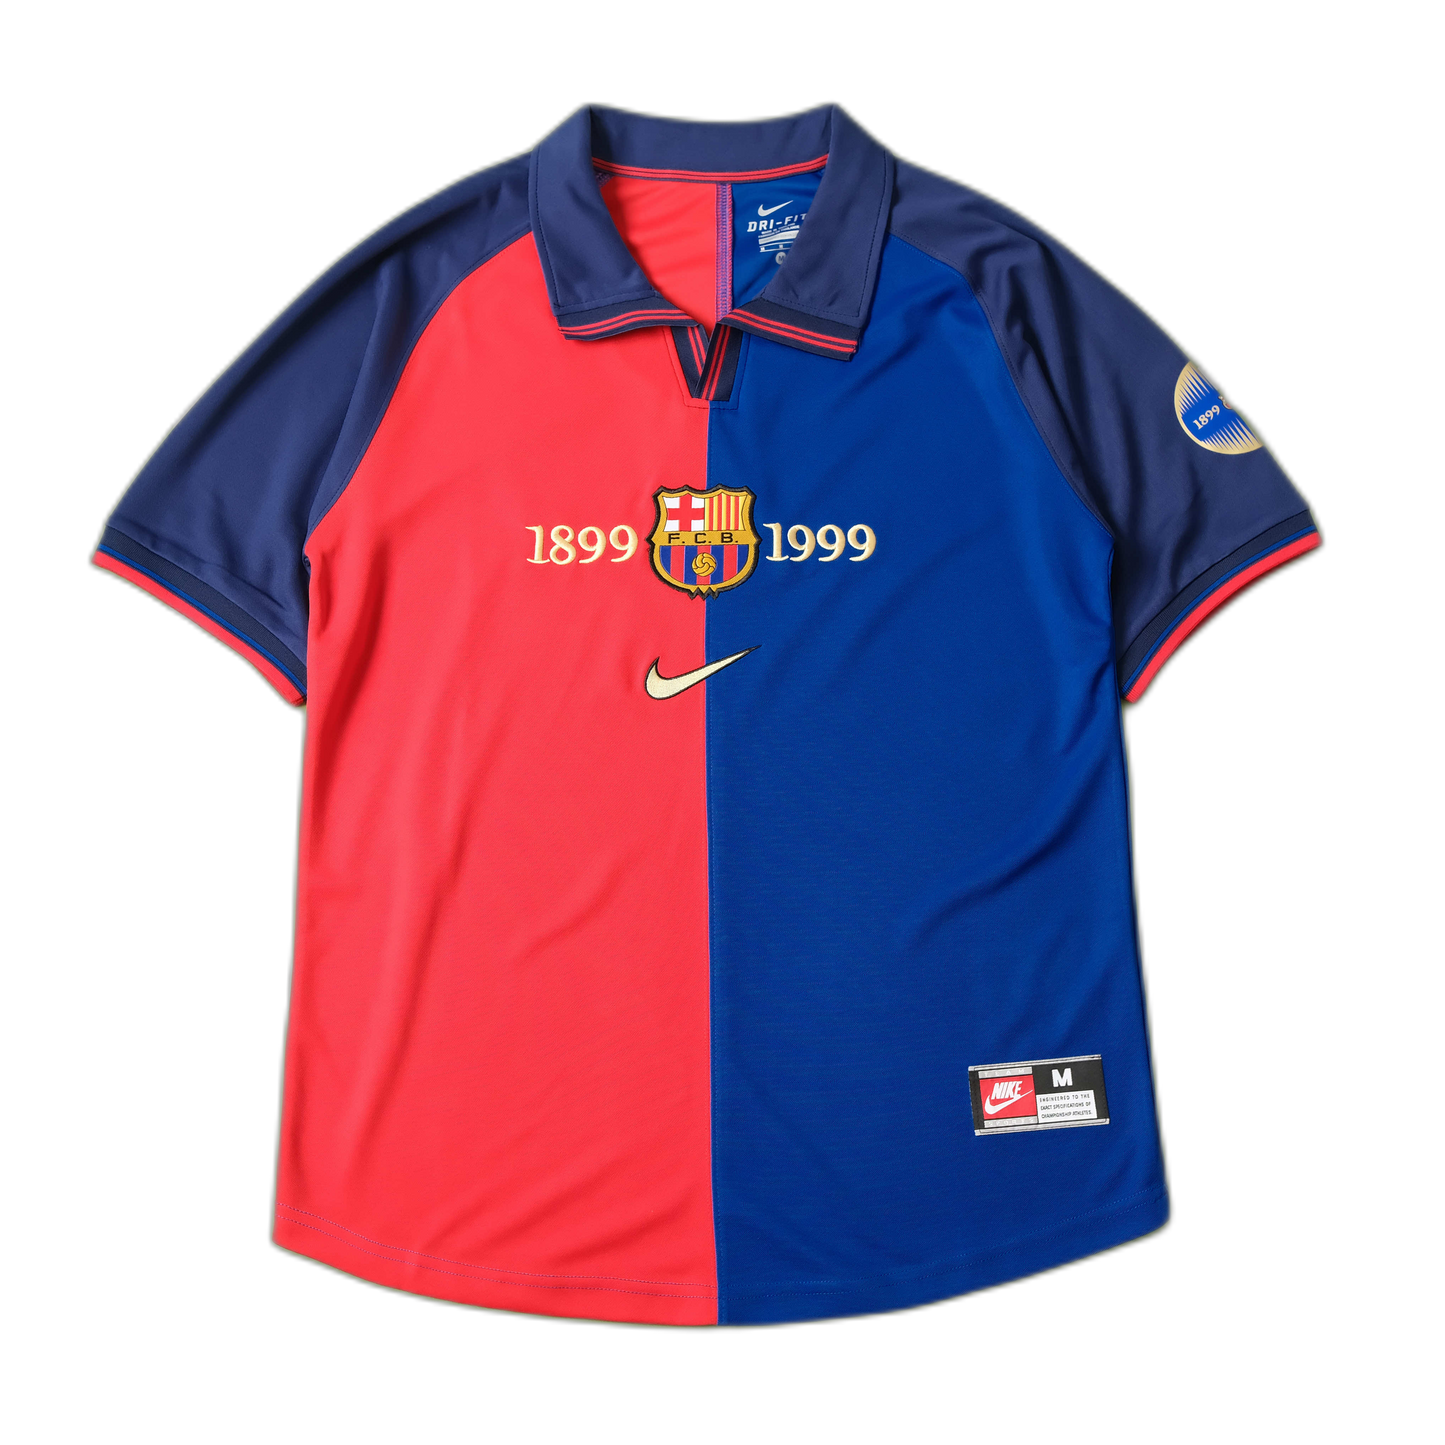 Barcelona 1999/00 Retro "100th Anniversary" Jersey